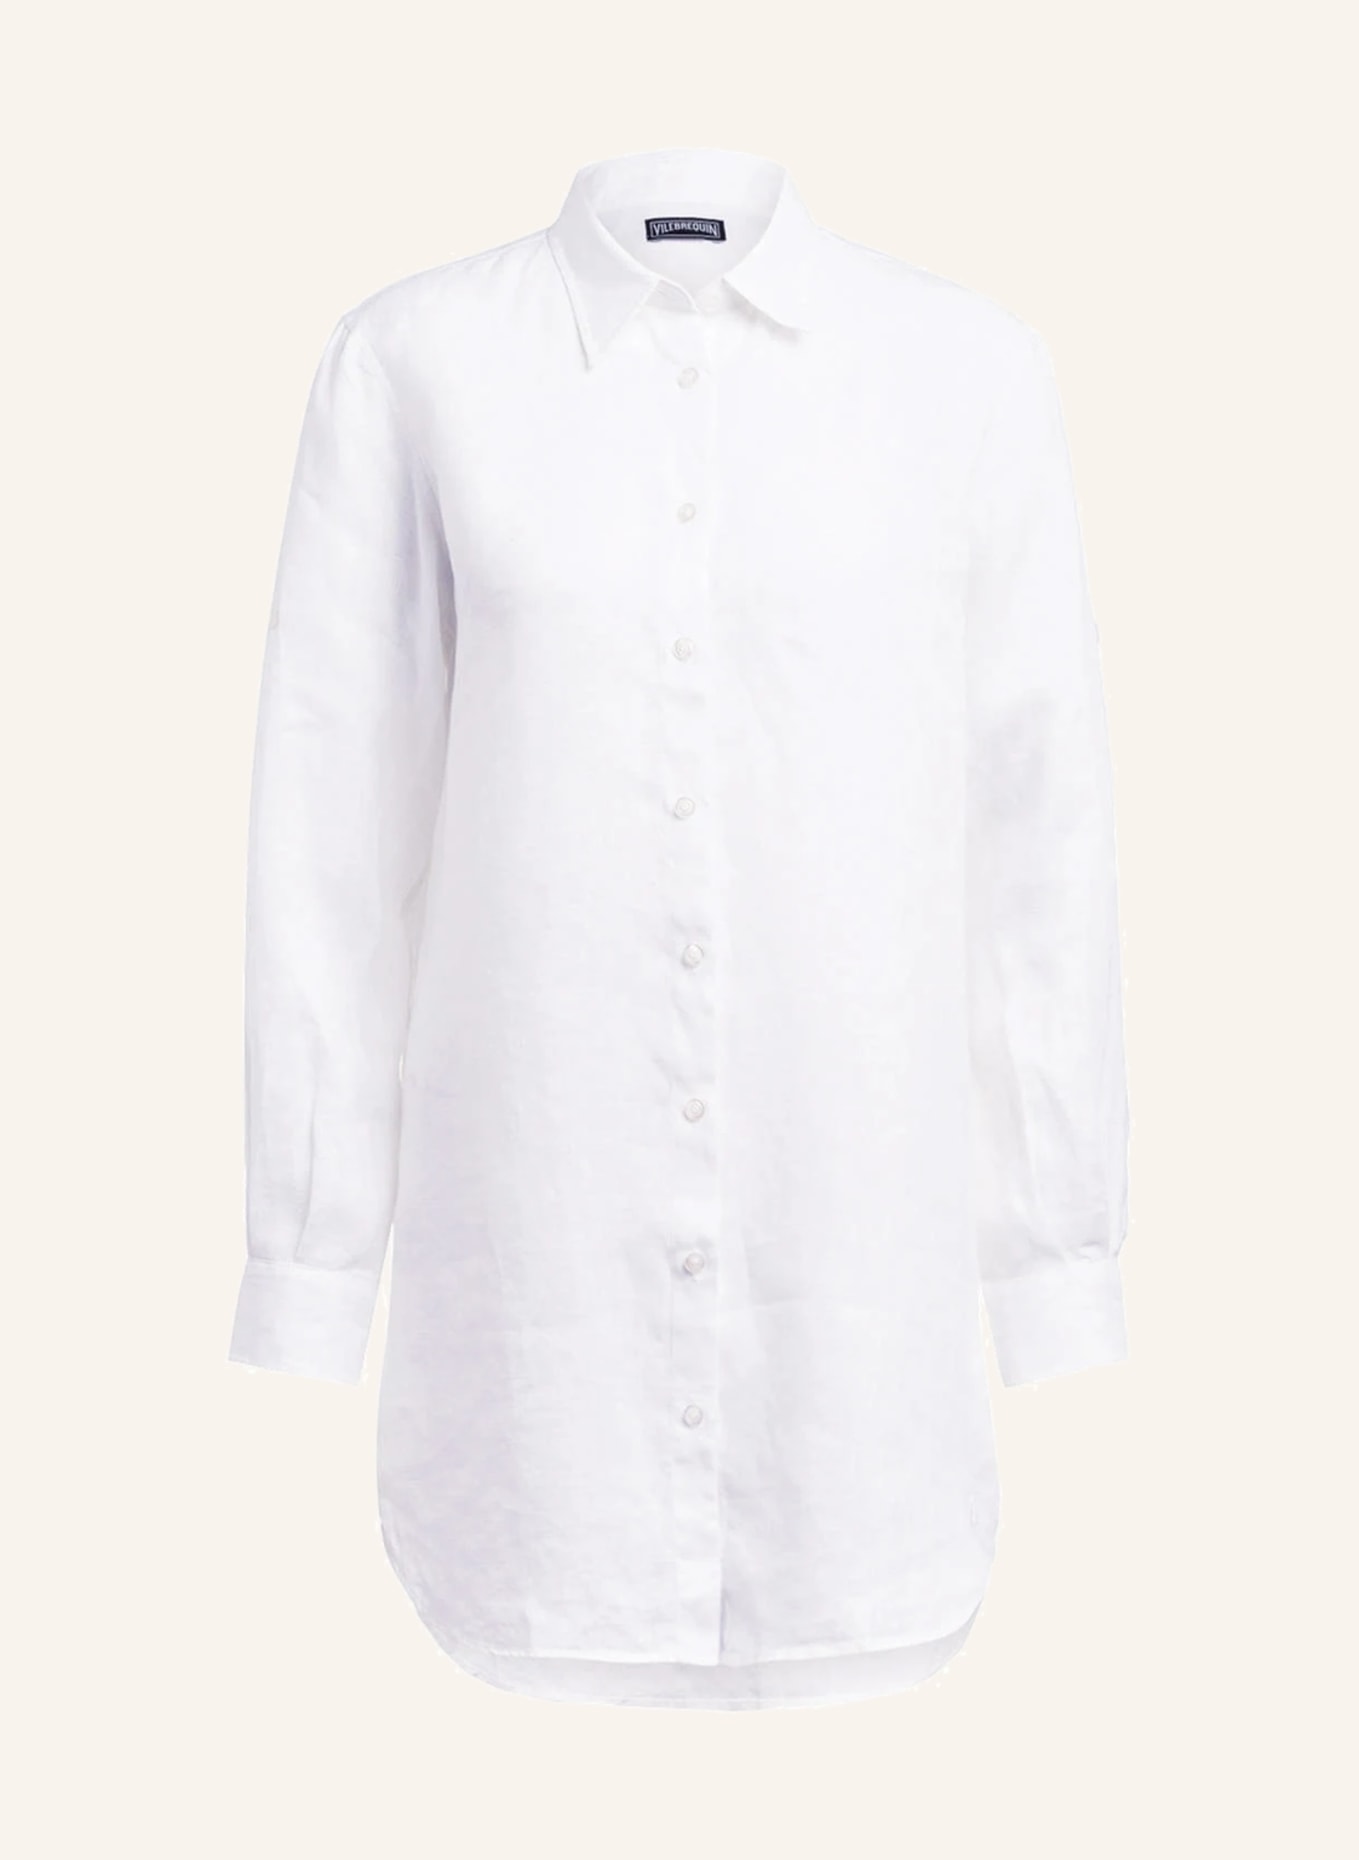 VILEBREQUIN Shirt dress FRAGANCE made of linen, Color: WHITE (Image 1)